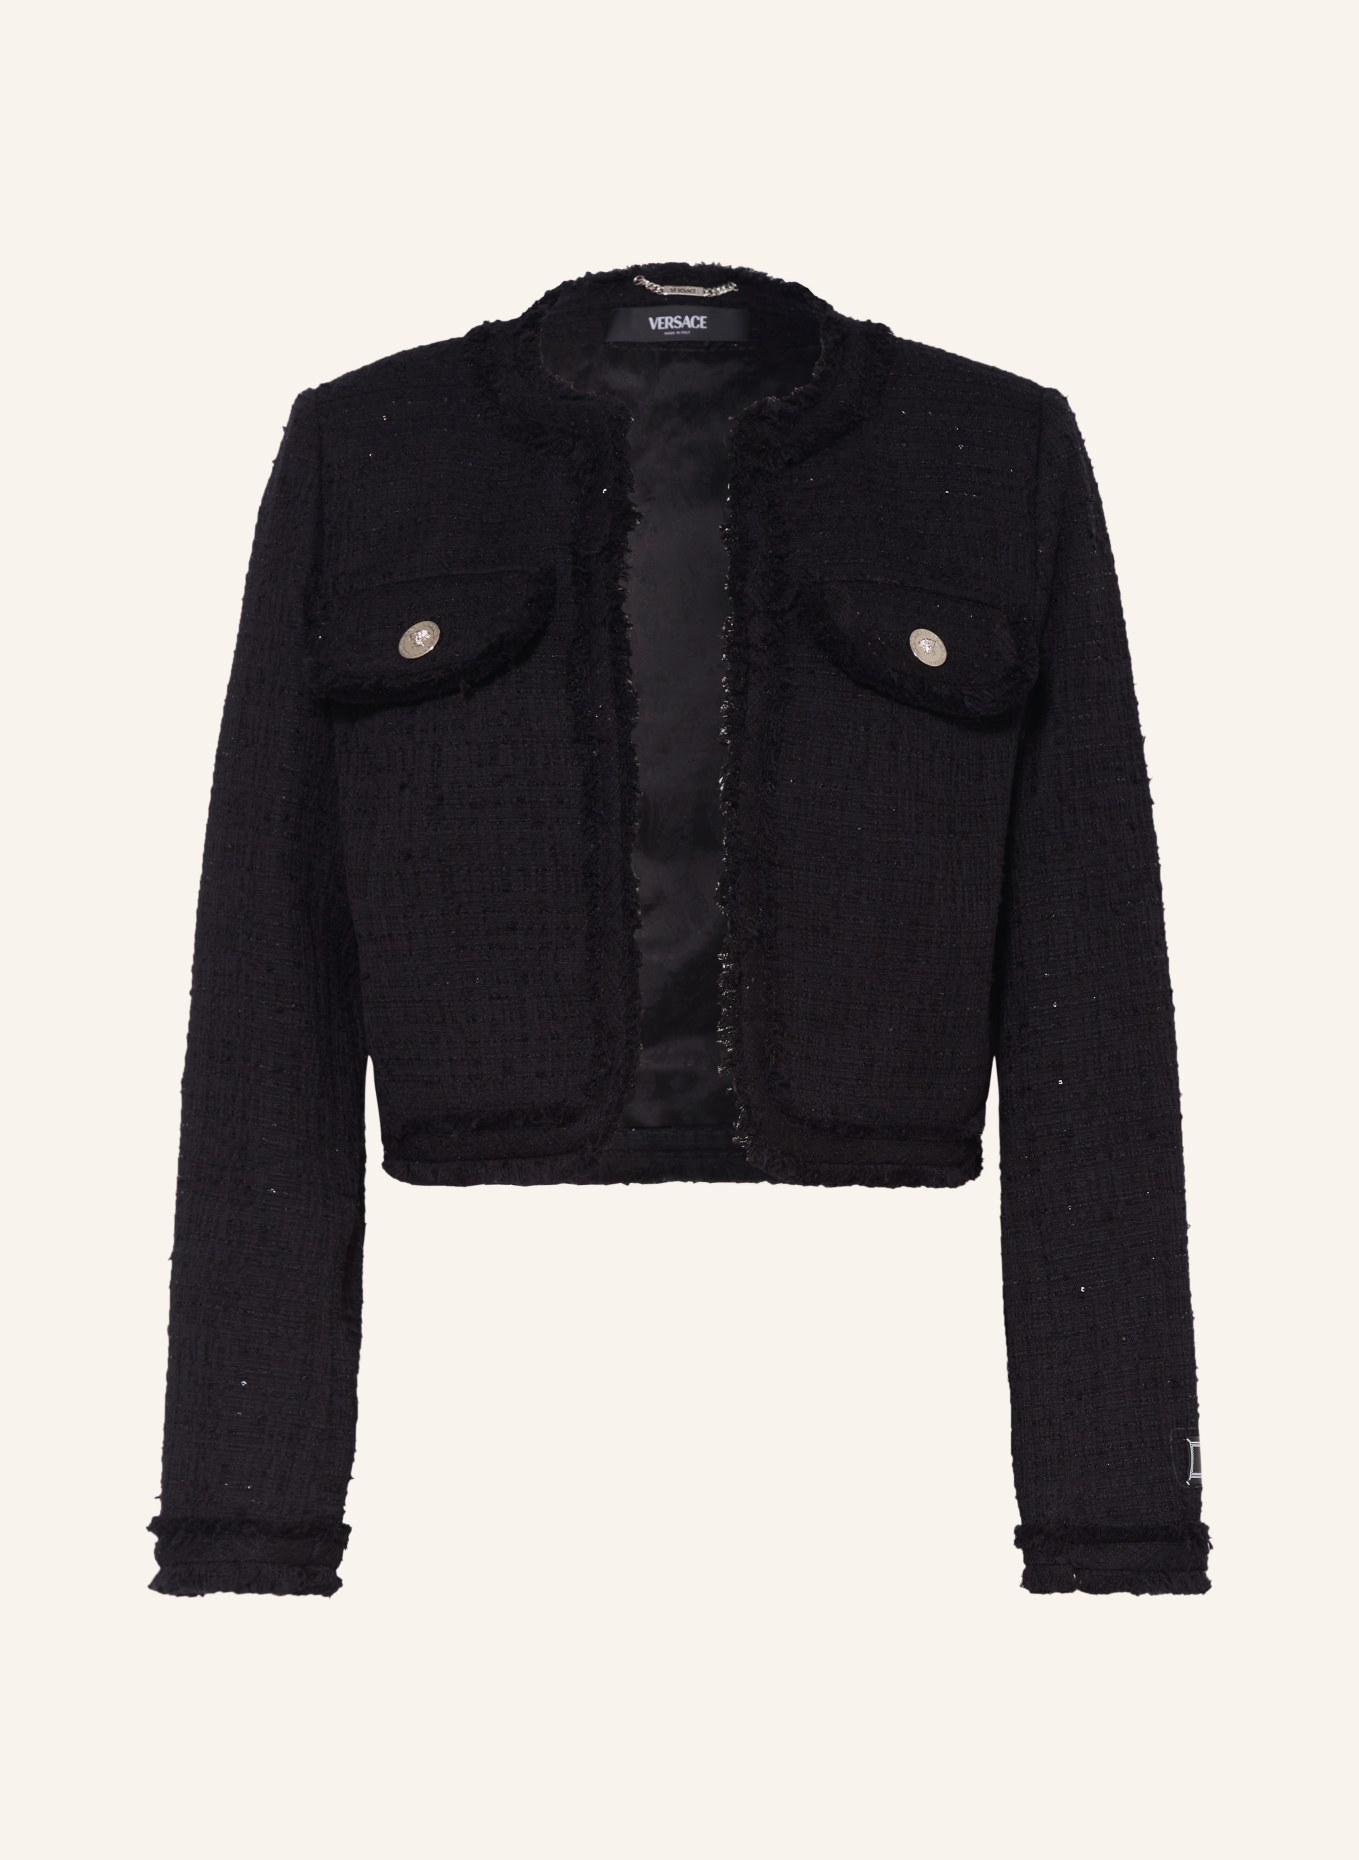 VERSACE Tweed-Jacke mit Pailletten, Farbe: SCHWARZ (Bild 1)